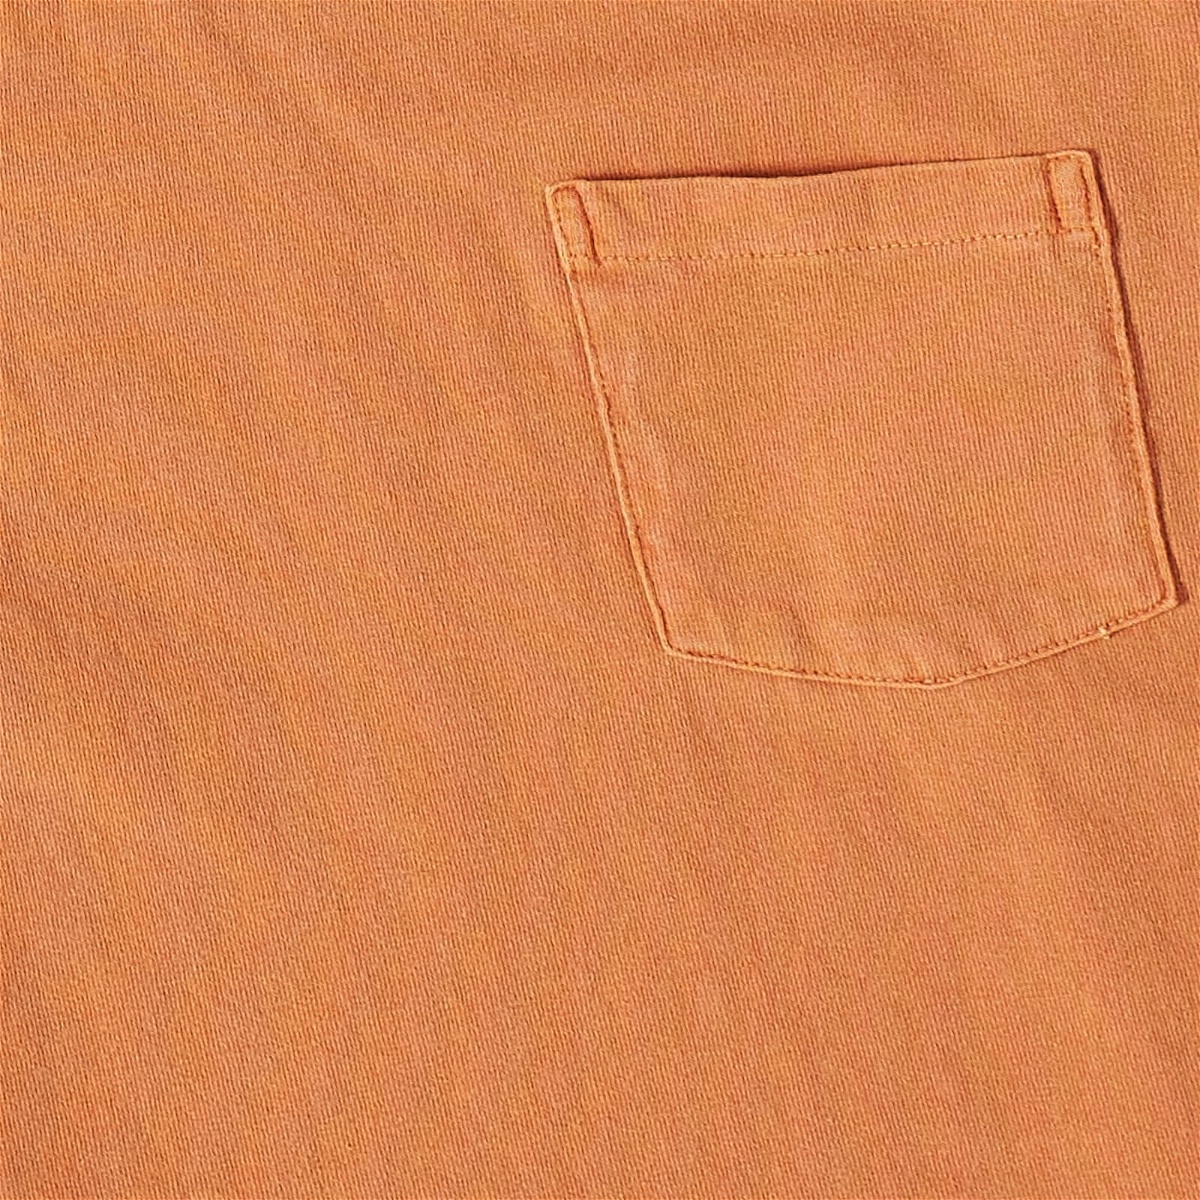 Velva Sheen Men's Pigment Dyed Pocket T-Shirt in Terracotta Velva Sheen